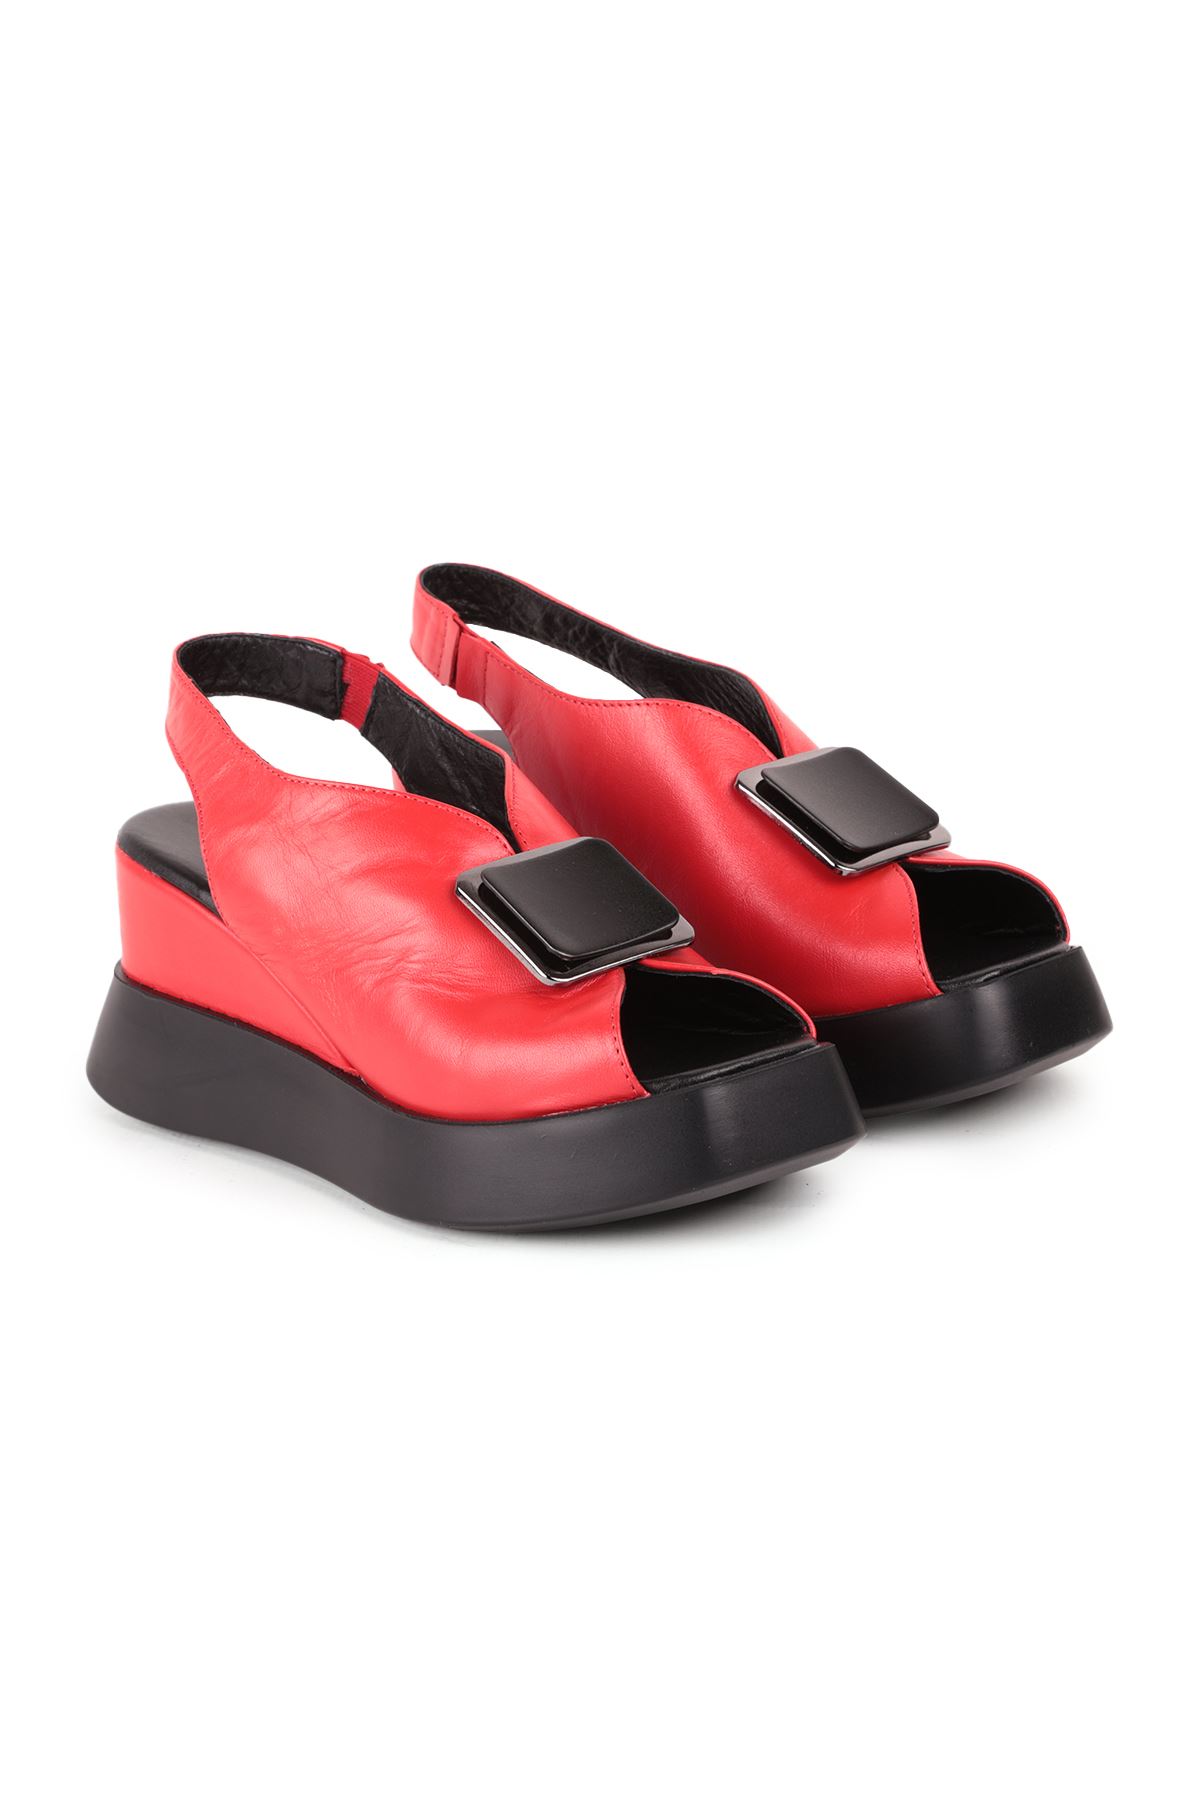 Libero L27.10240 Kırmızı Kadın Topuklu Deri Ayakkabı 